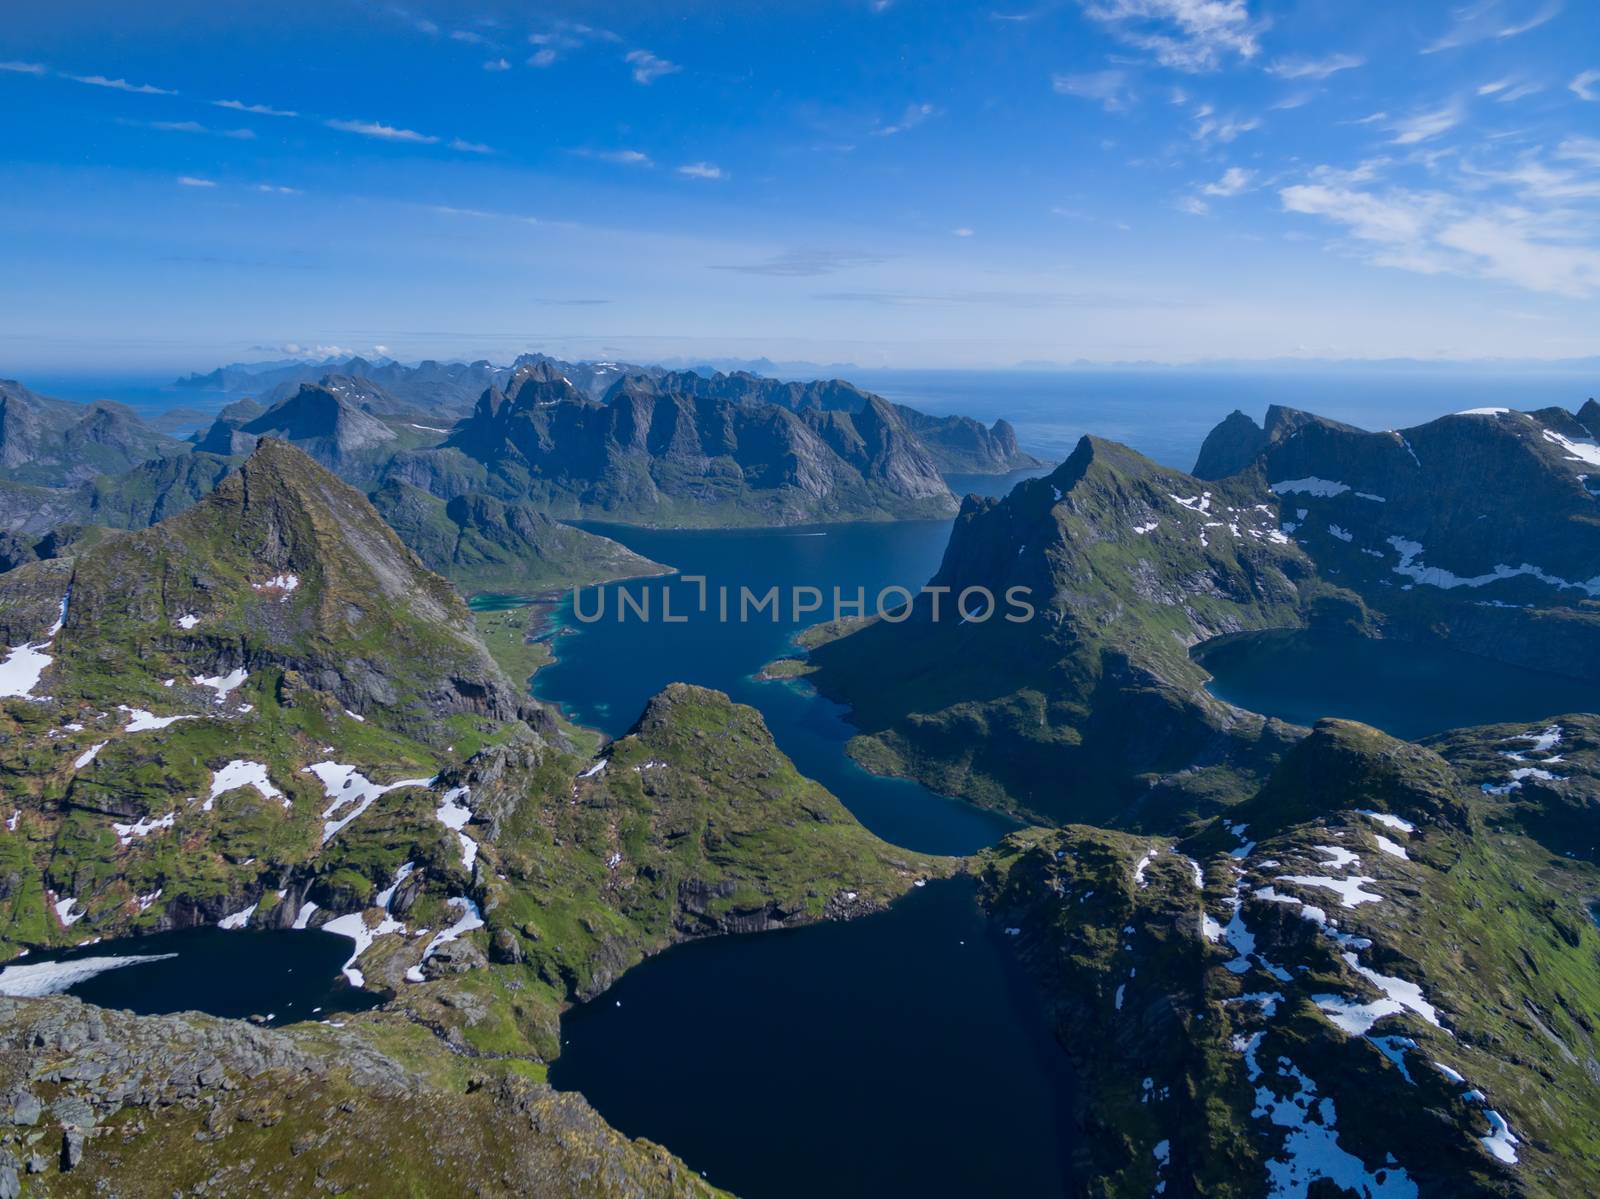 Scenic view of beautiful Lofoten islands in Norway